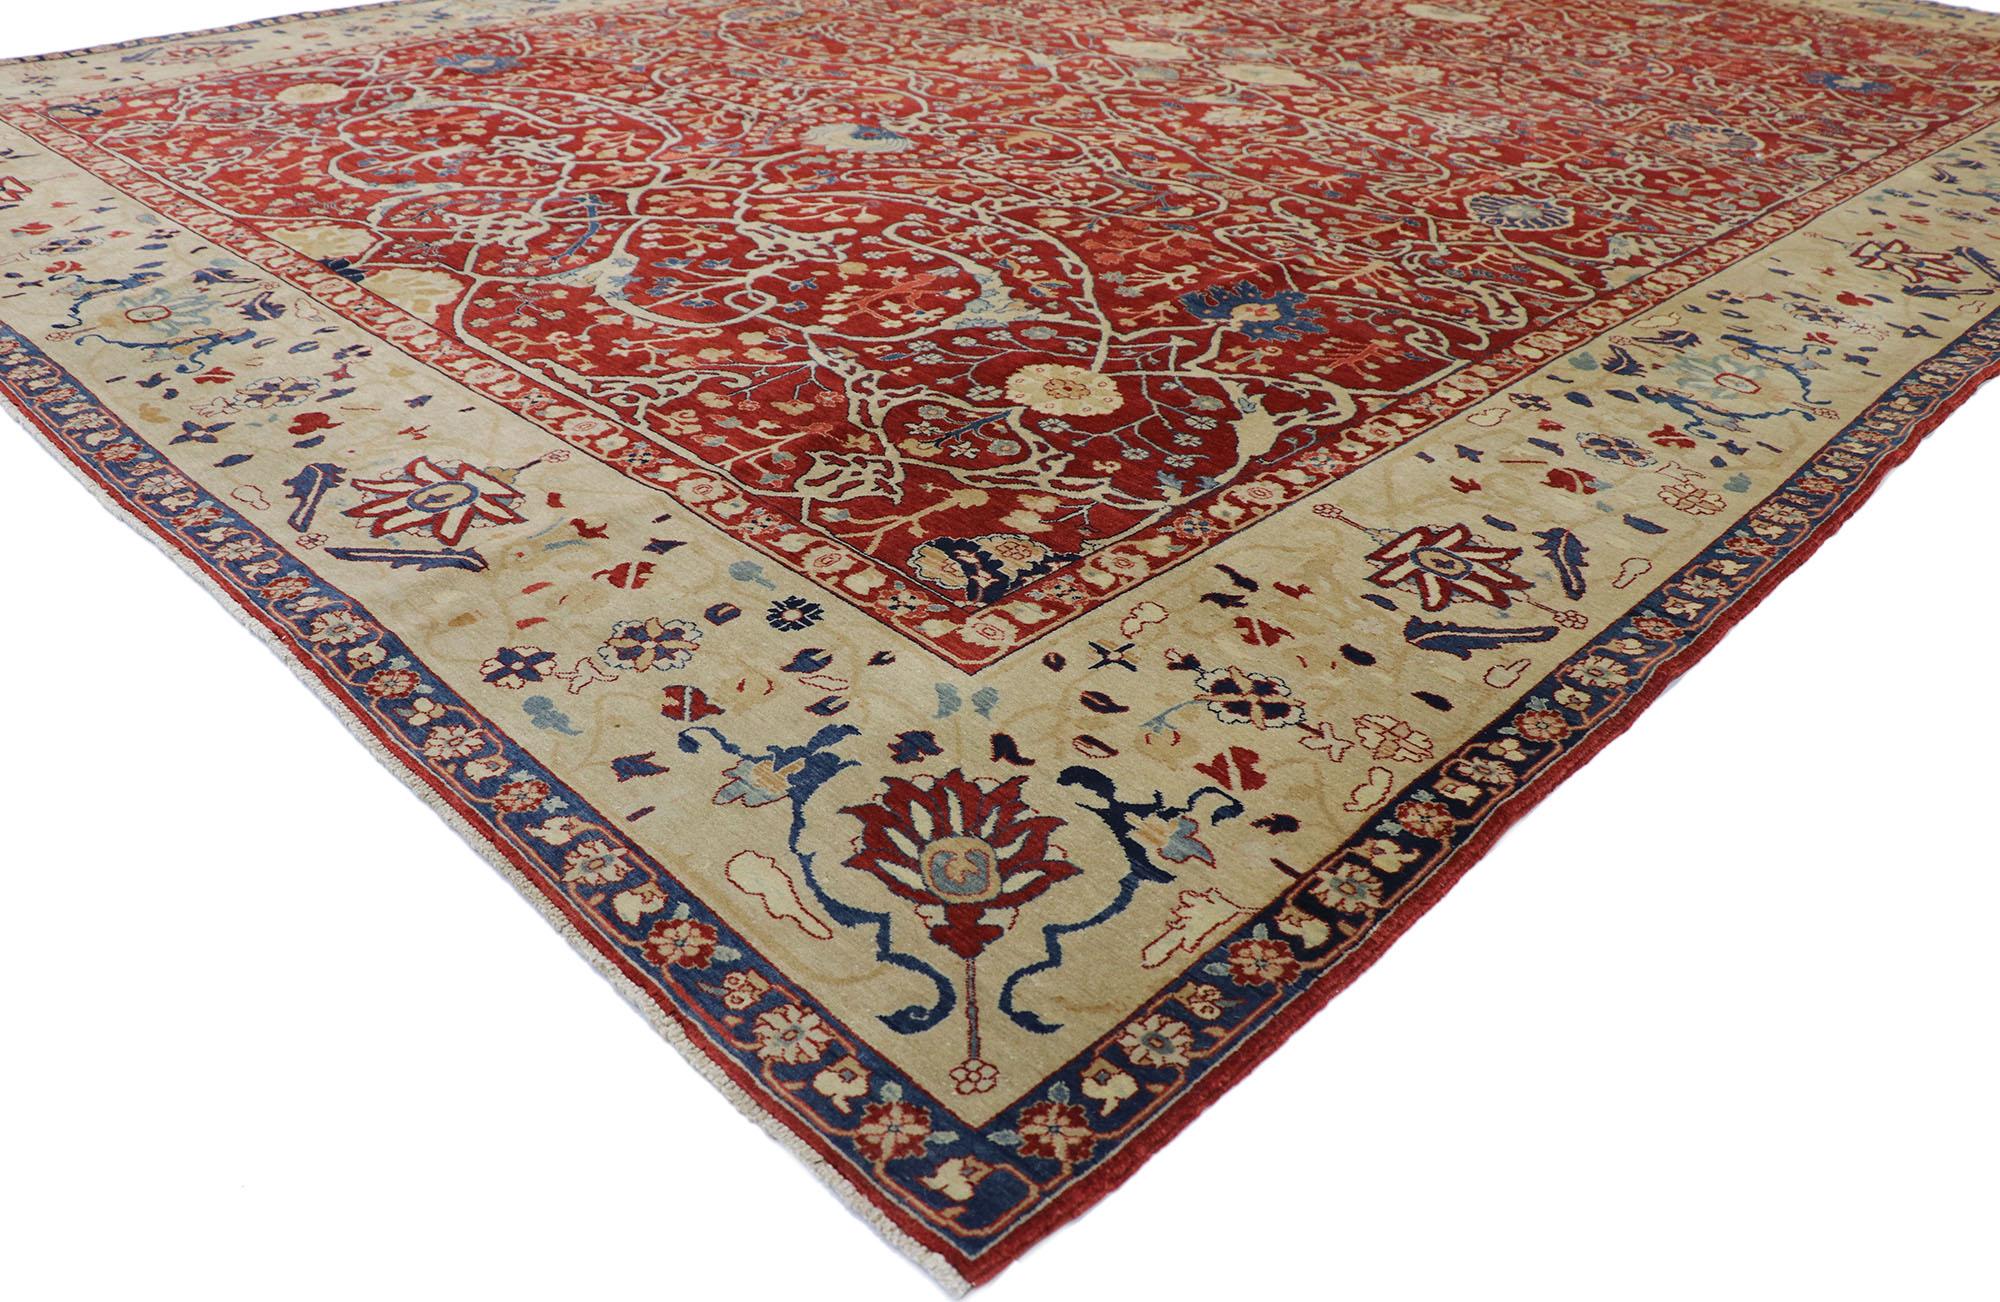 77643, tapis indien vintage Agra de style jacobéen moderne. Avec ses teintes rouges profondes et sa beauté séduisante, ce tapis indien vintage Agra en laine nouée à la main prendra un aspect vécu et soigné, intemporel, tout en transmettant un